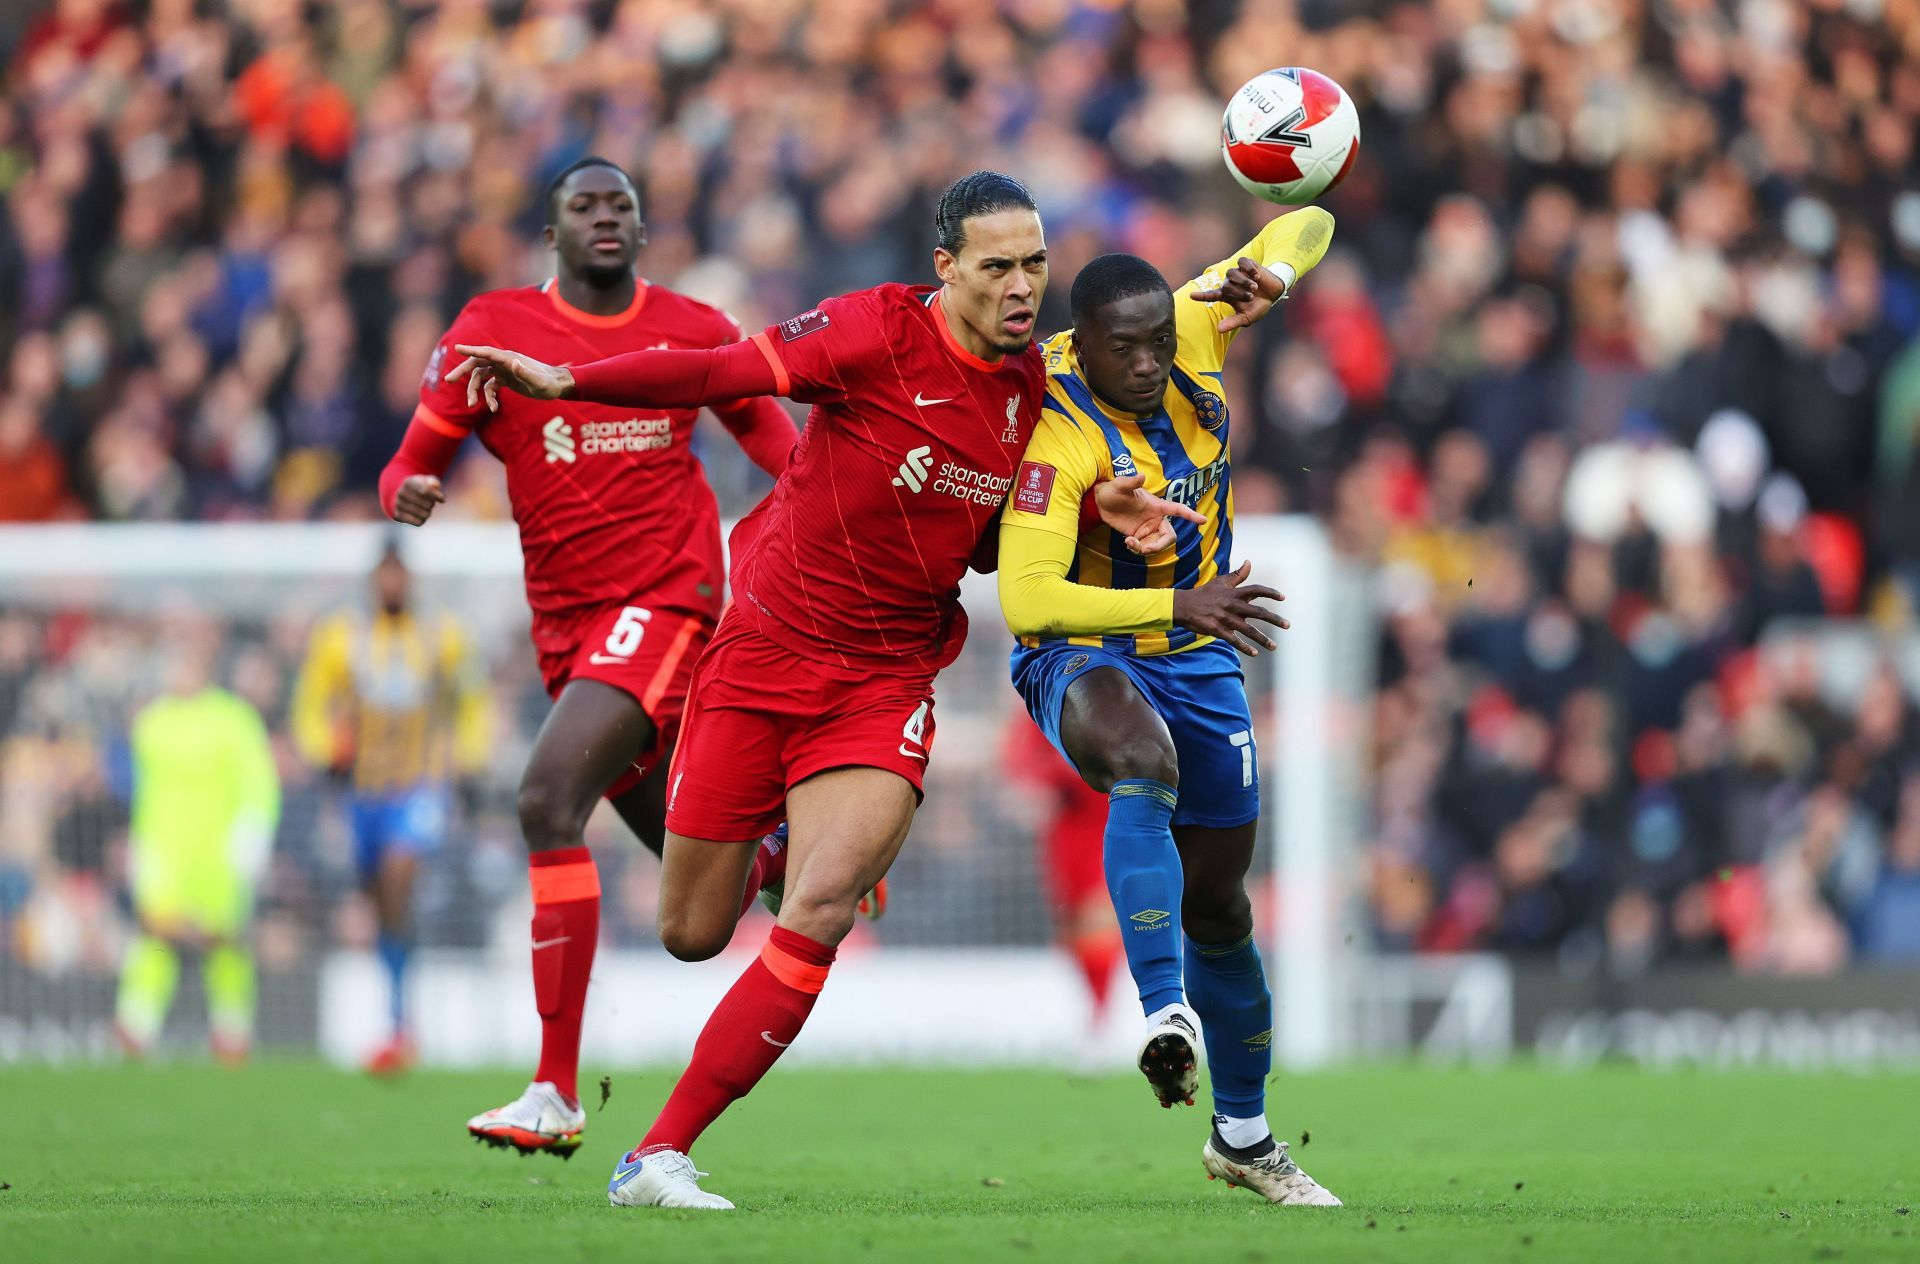 Liverpool vs Shrewsbury Town: Virgil Van Dijk in action